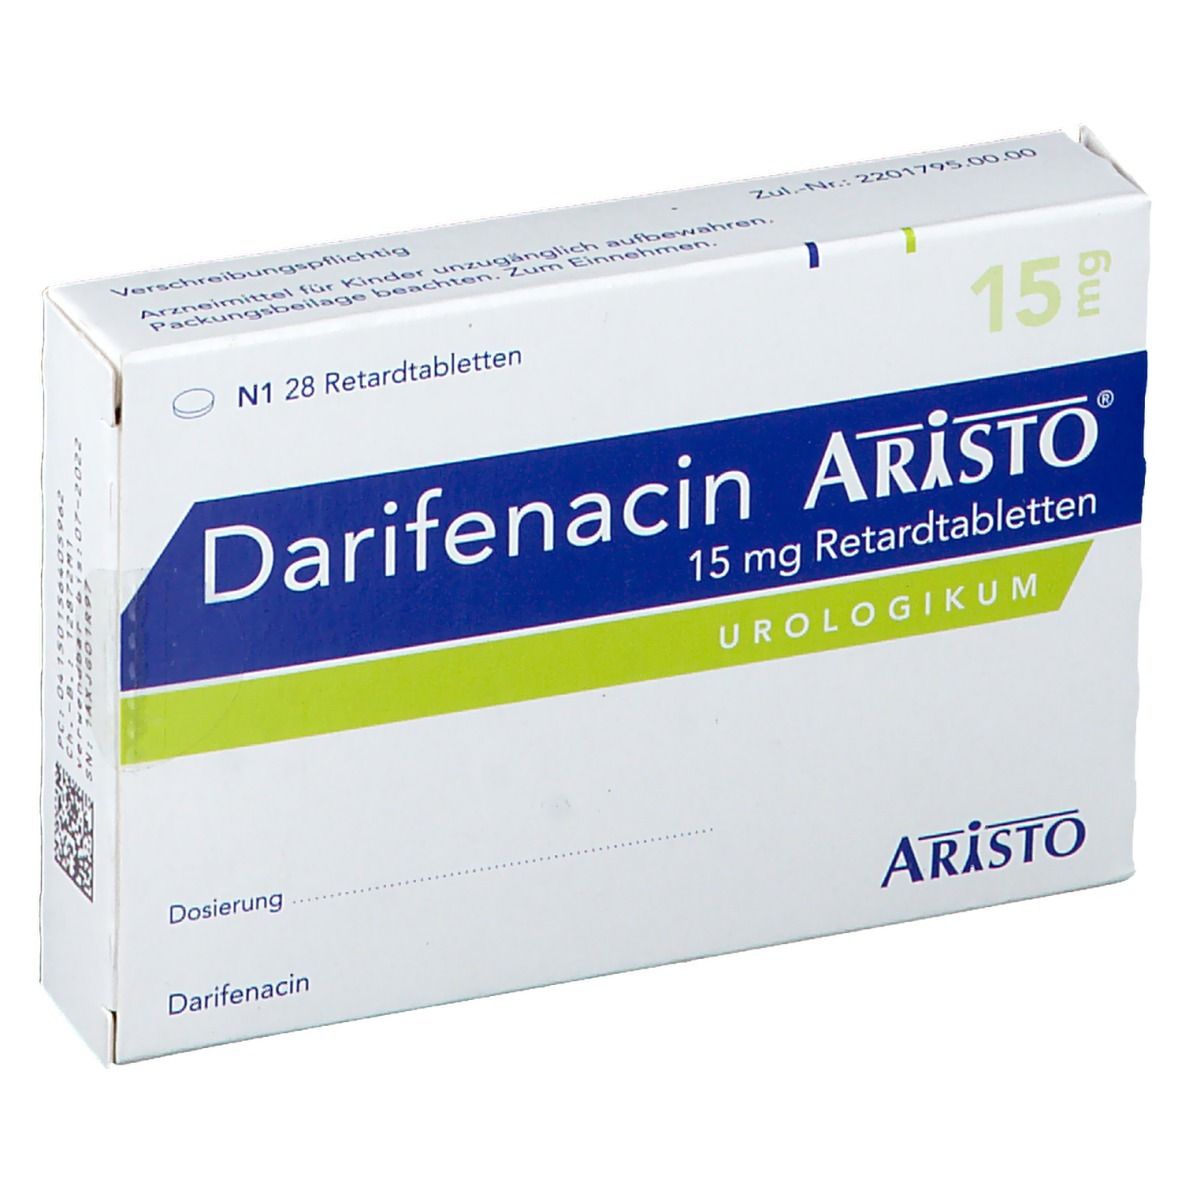 Darifenacin Aristo® 15 mg